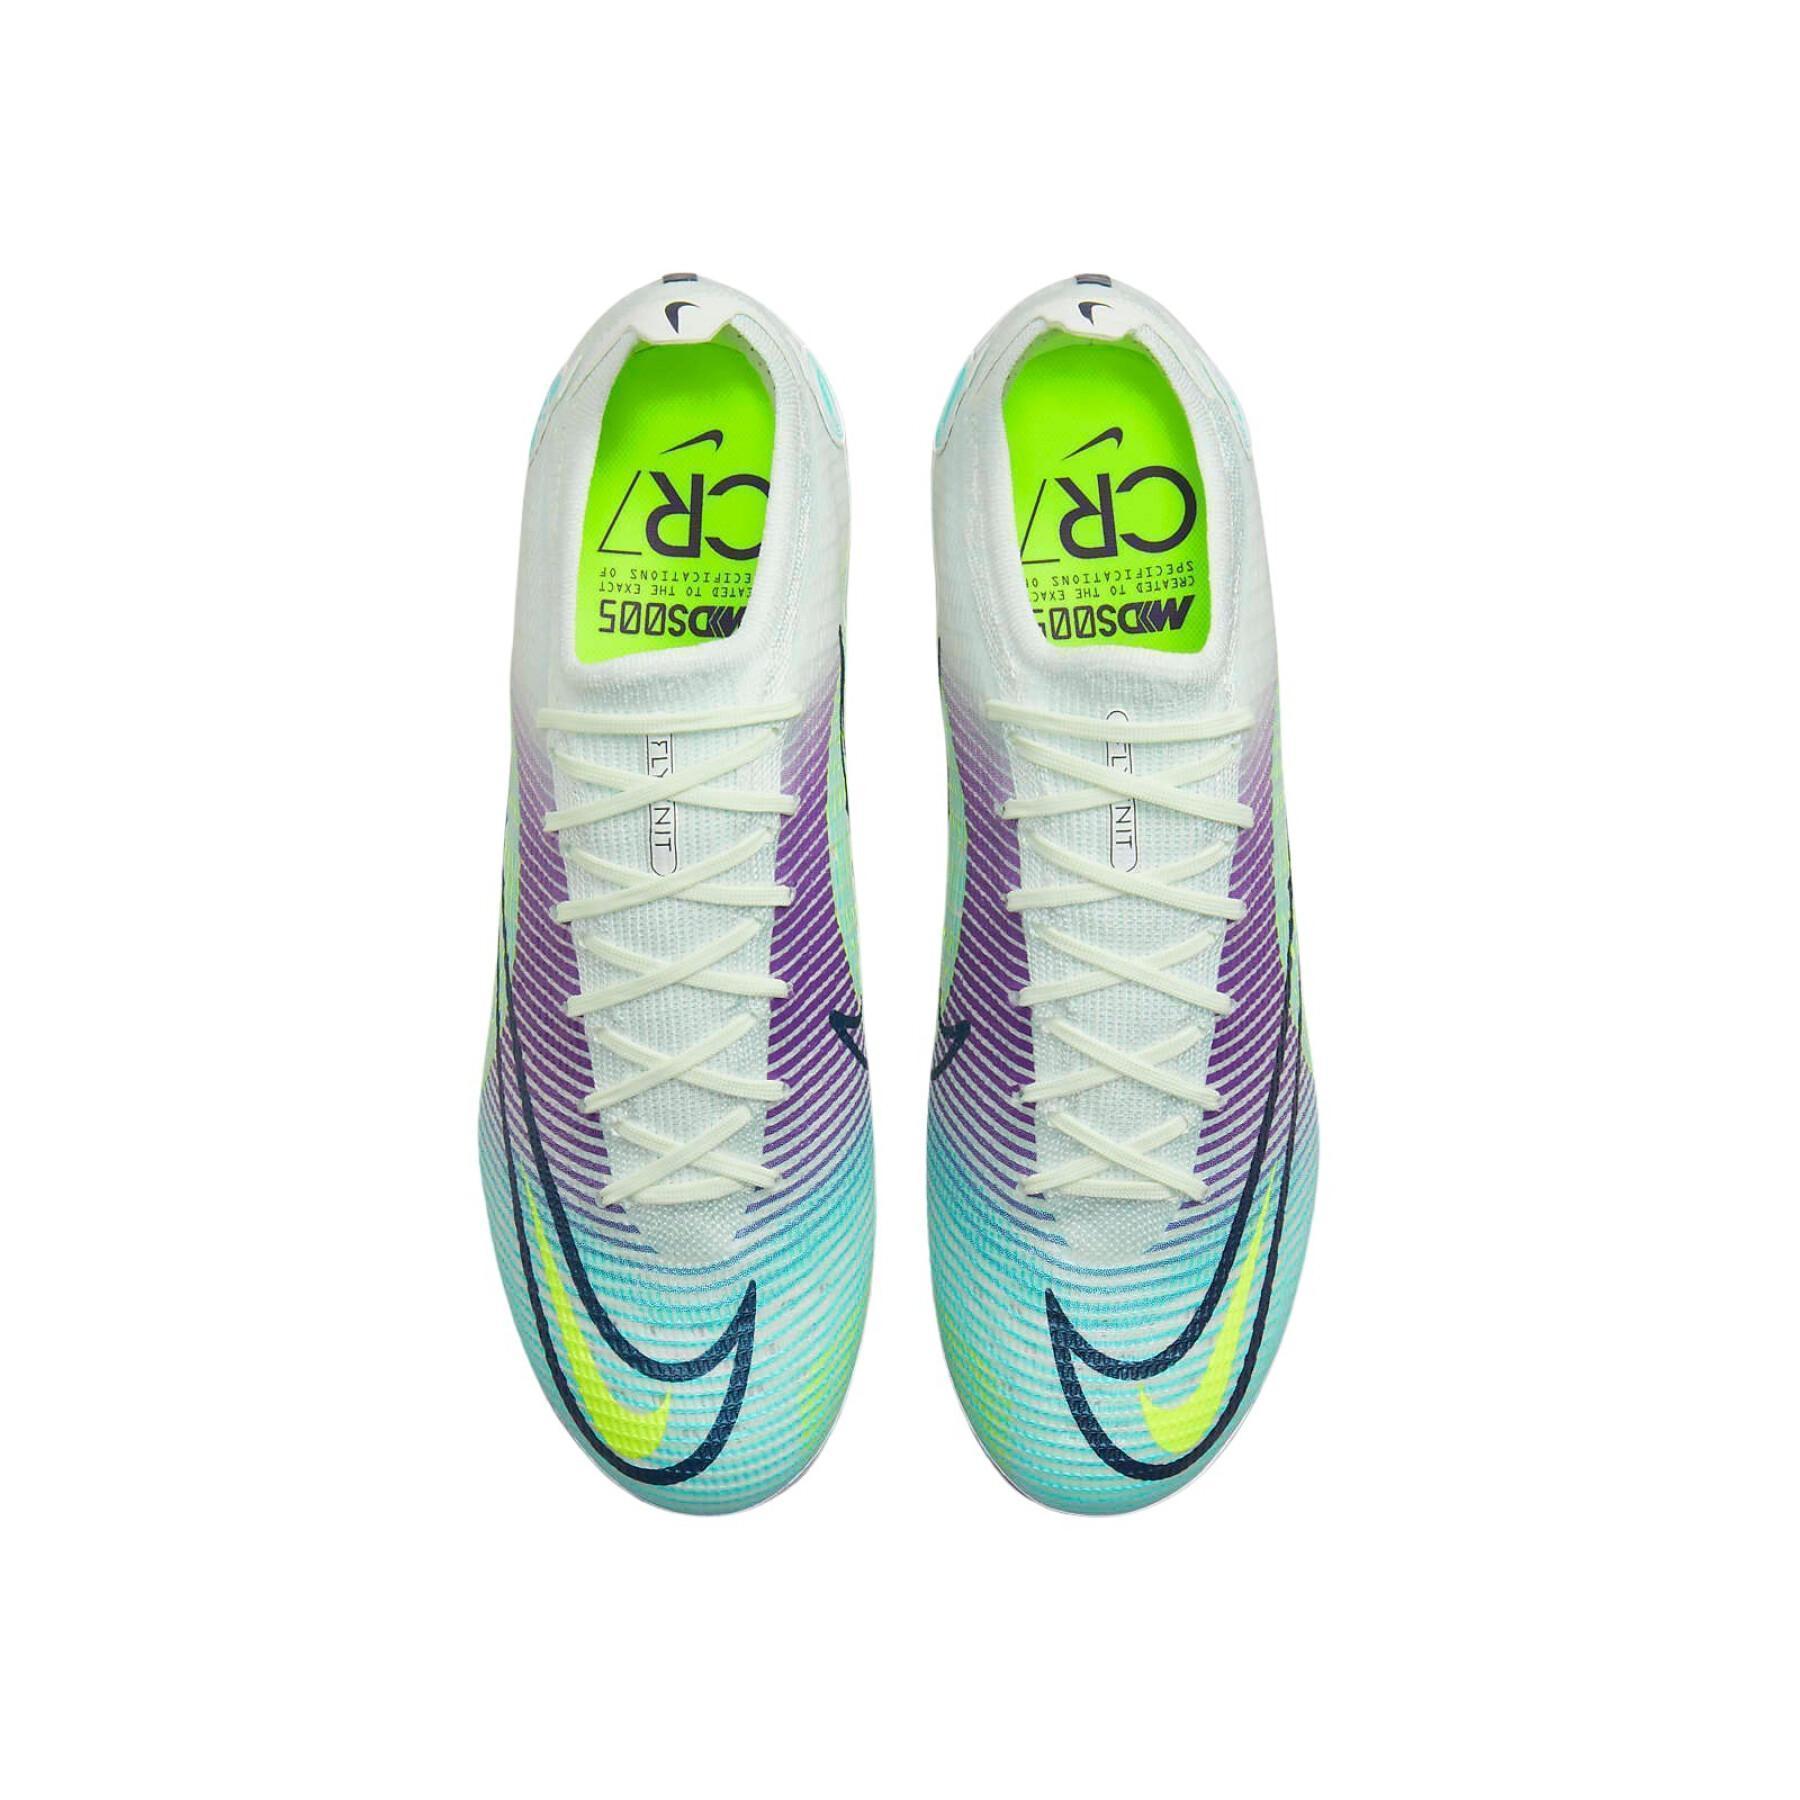 Fotbollsskor Nike Vapor 14 élite MDS FG